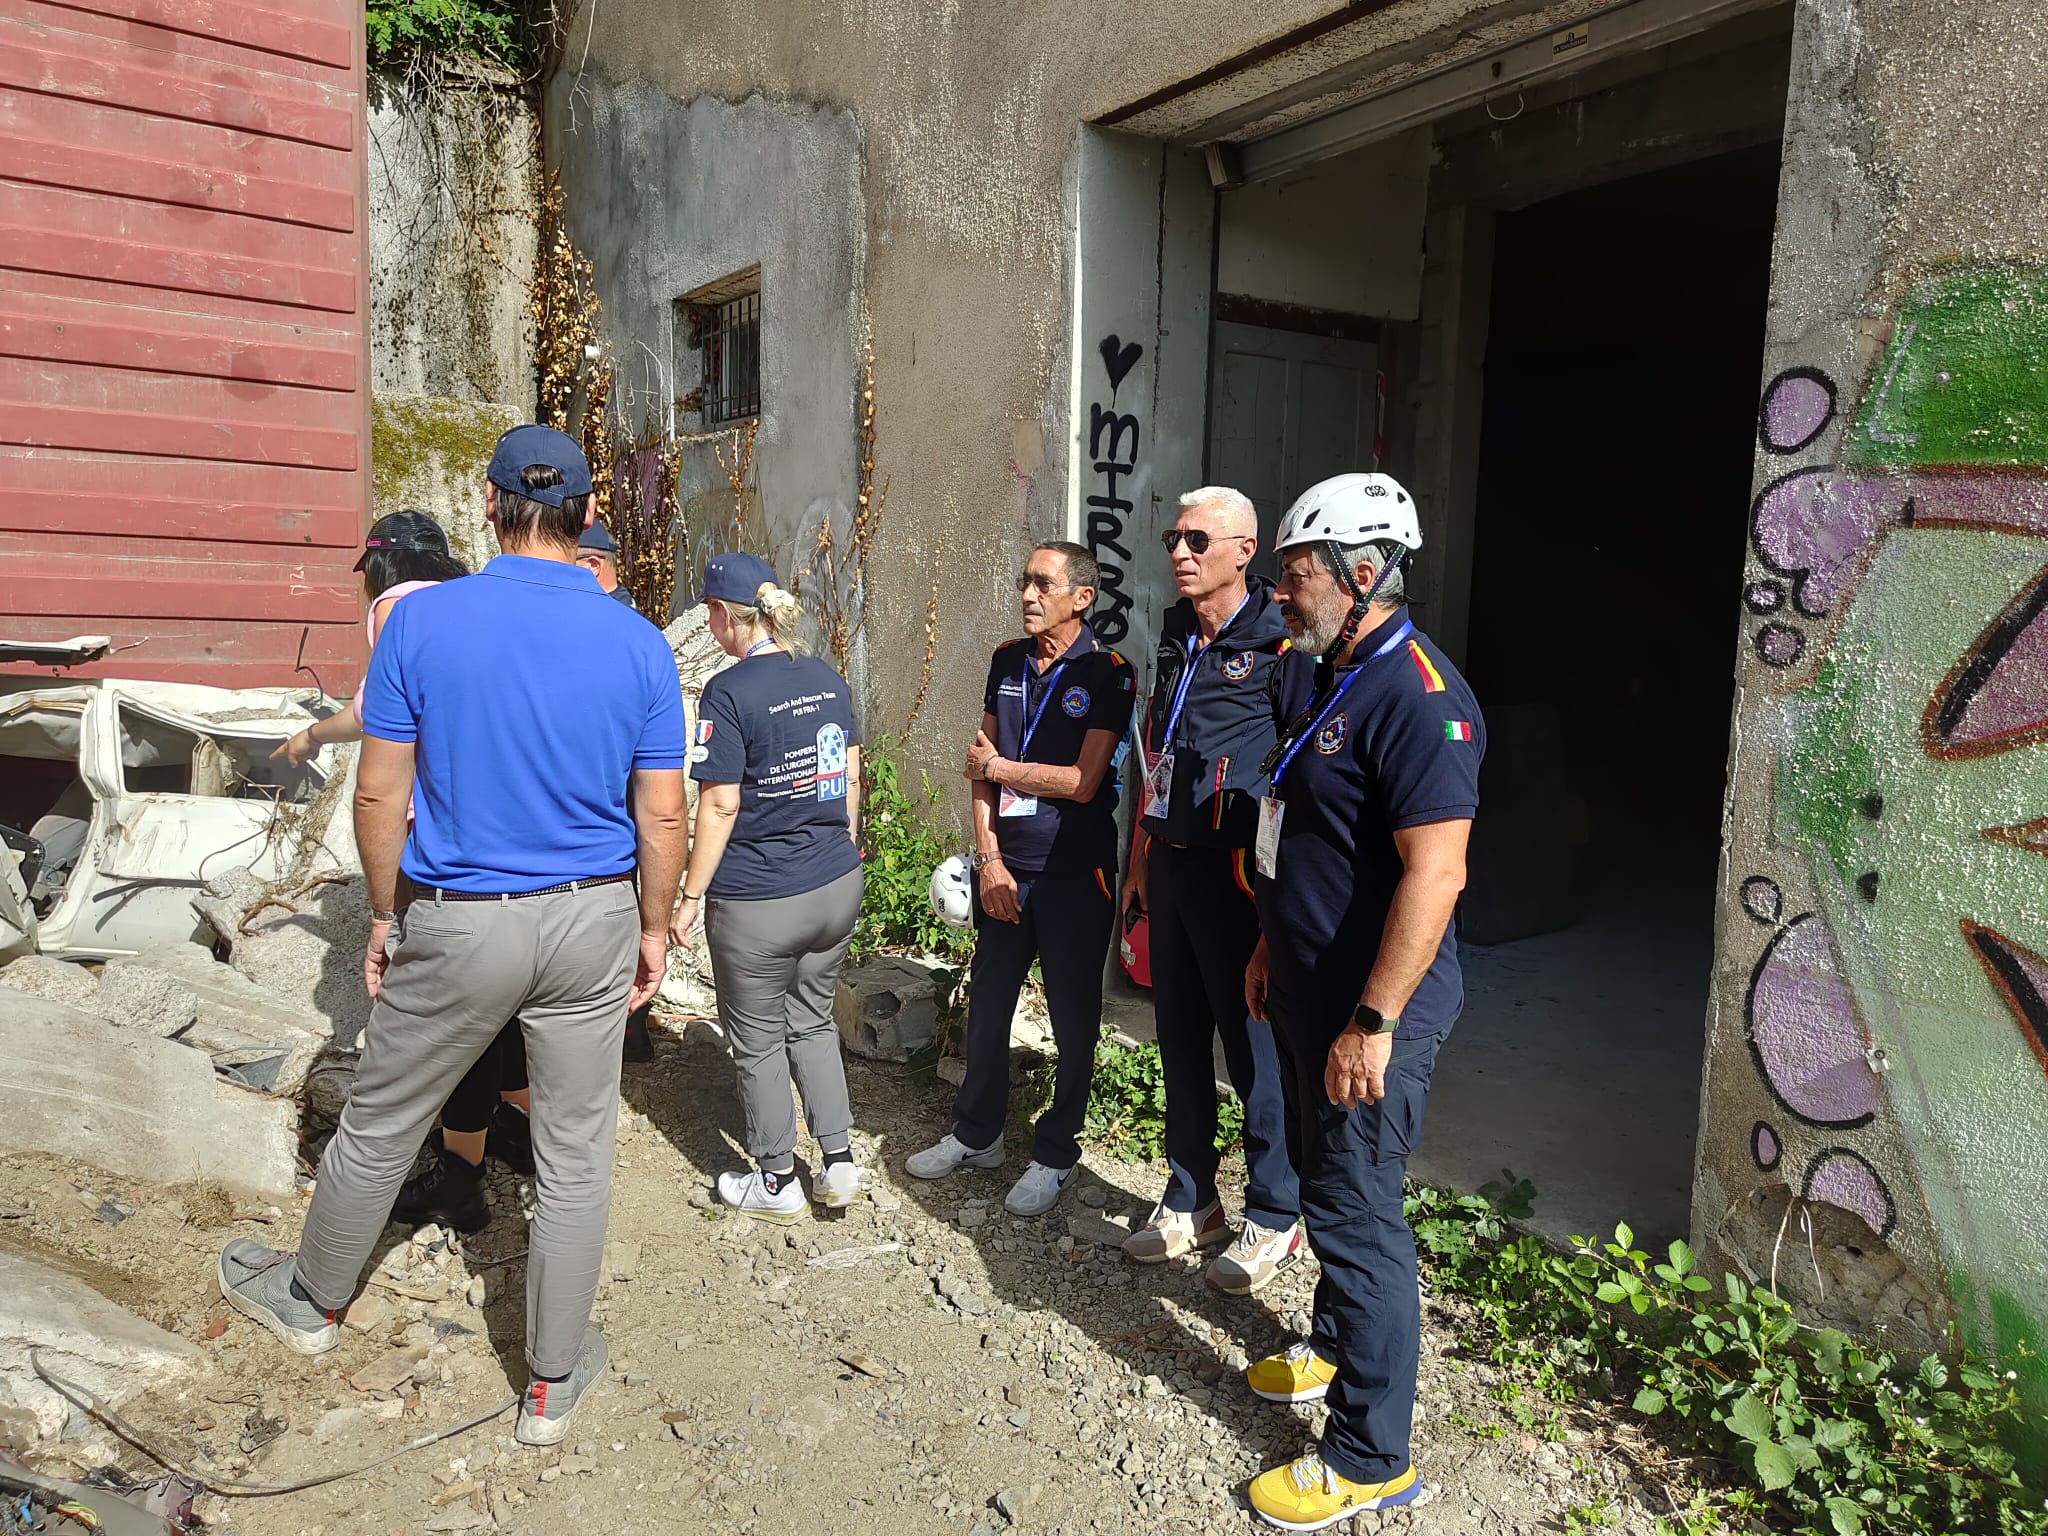 Esercitazione internazionale "Search & Rescue". Il Dipartimento della Protezione Civile Siciliana partecipa con i suoi funzionari